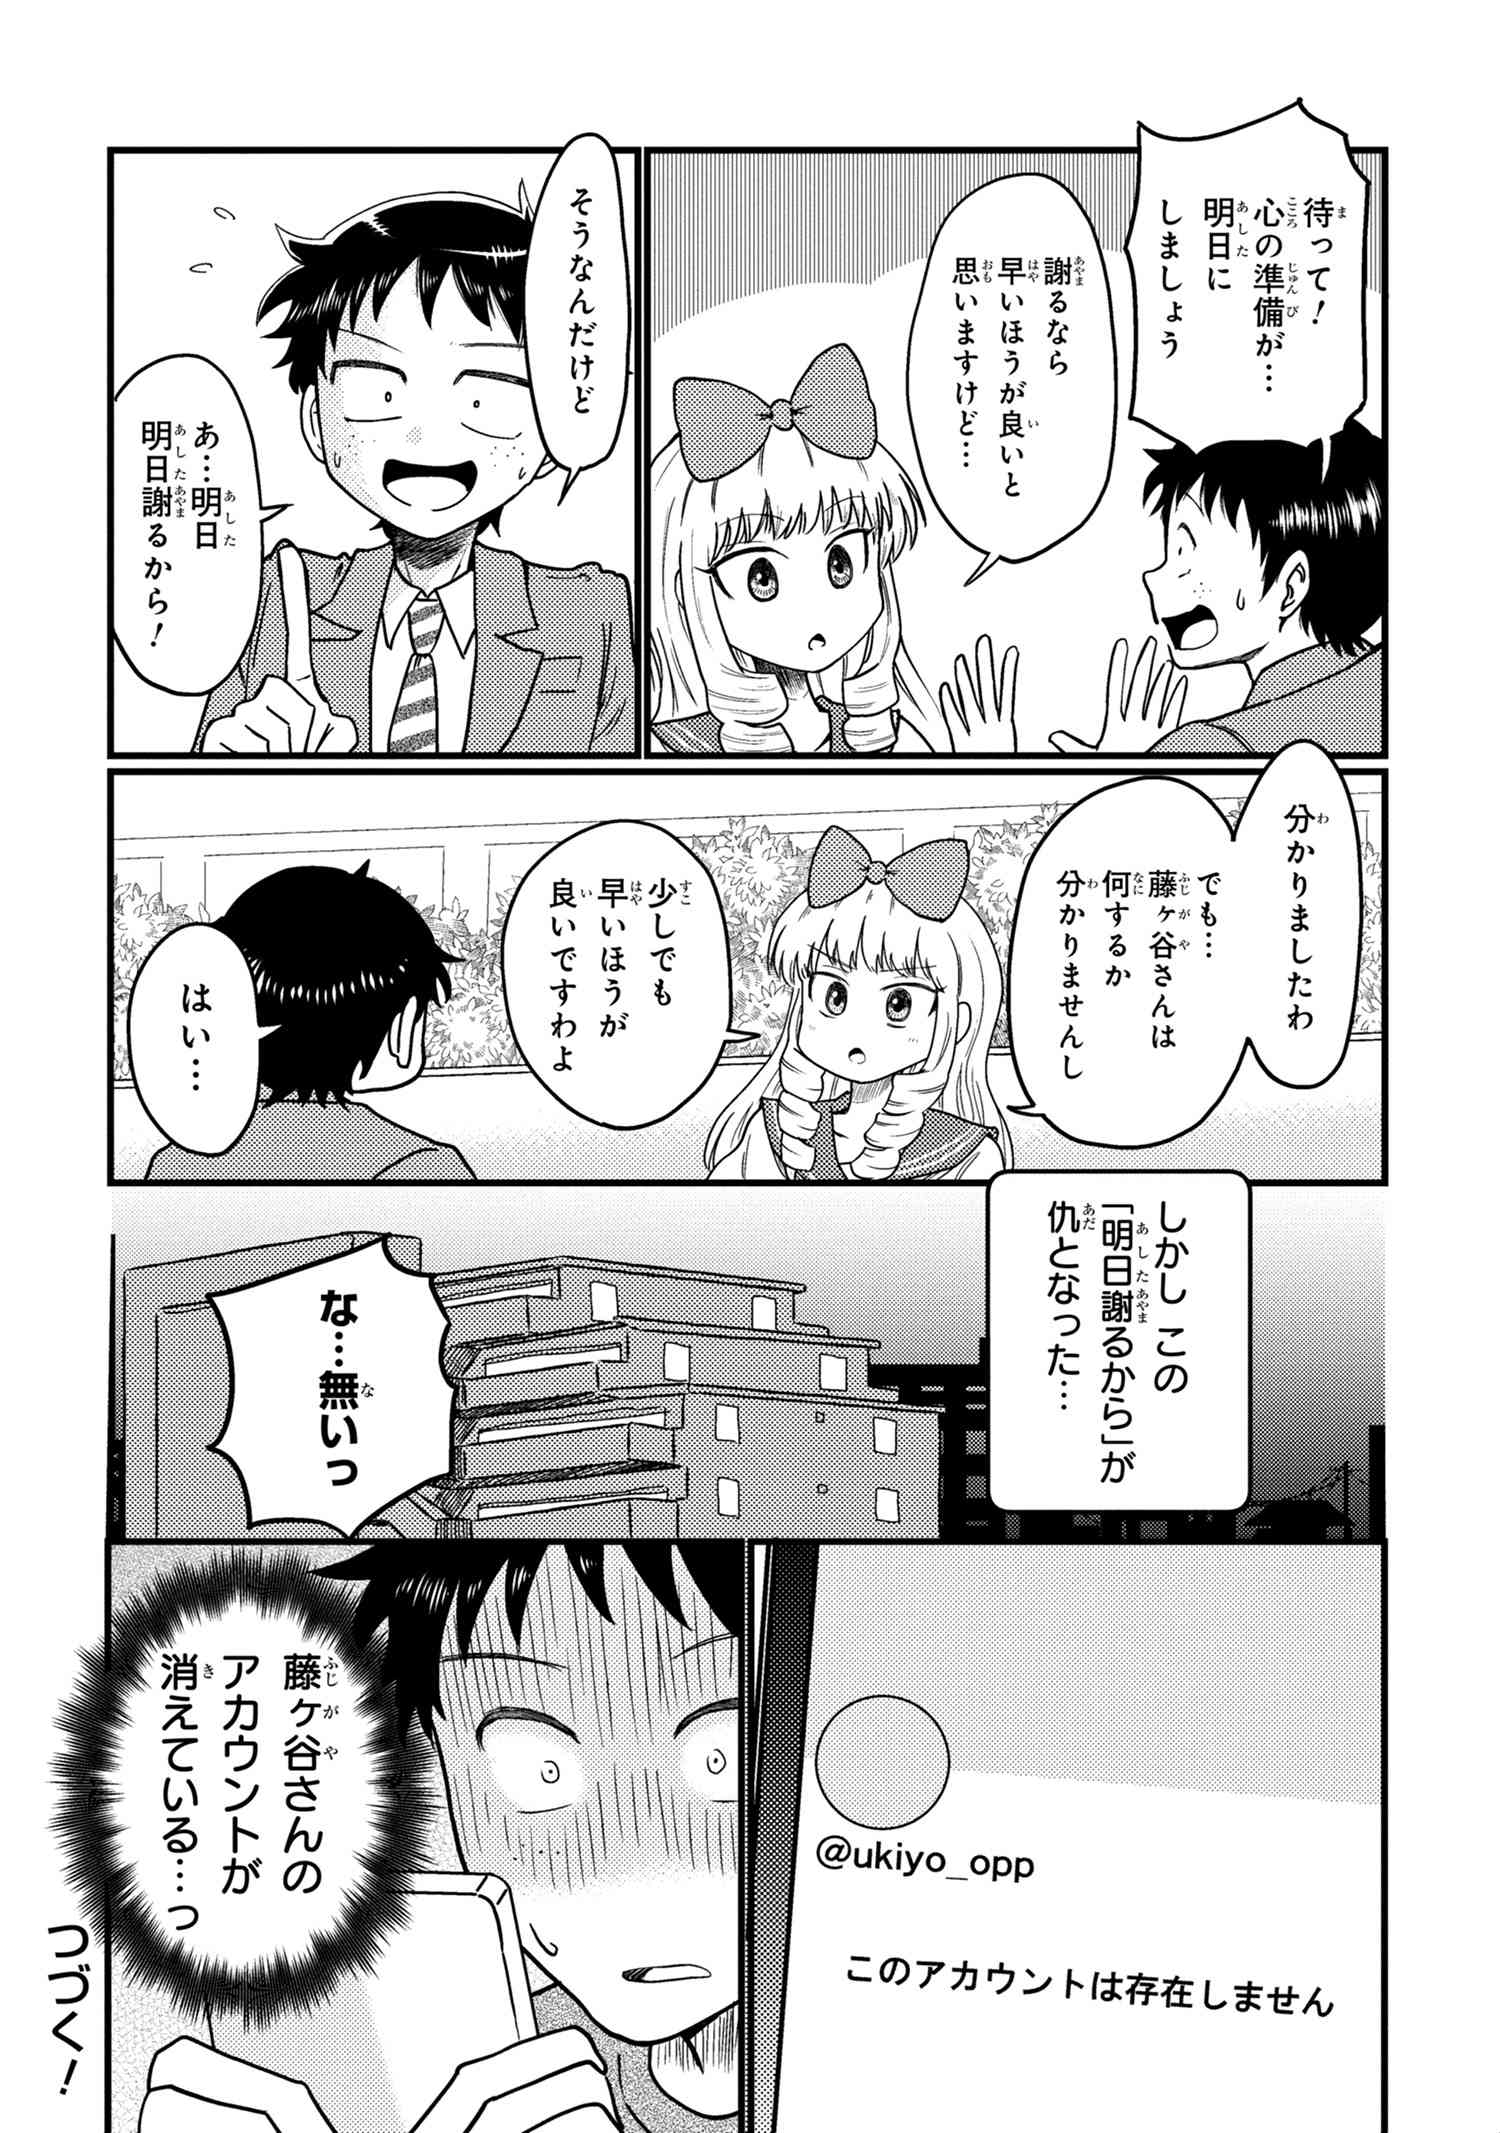 Houjou Urara no renai shousetsu o kaki nasai! - Chapter 13 - Page 4